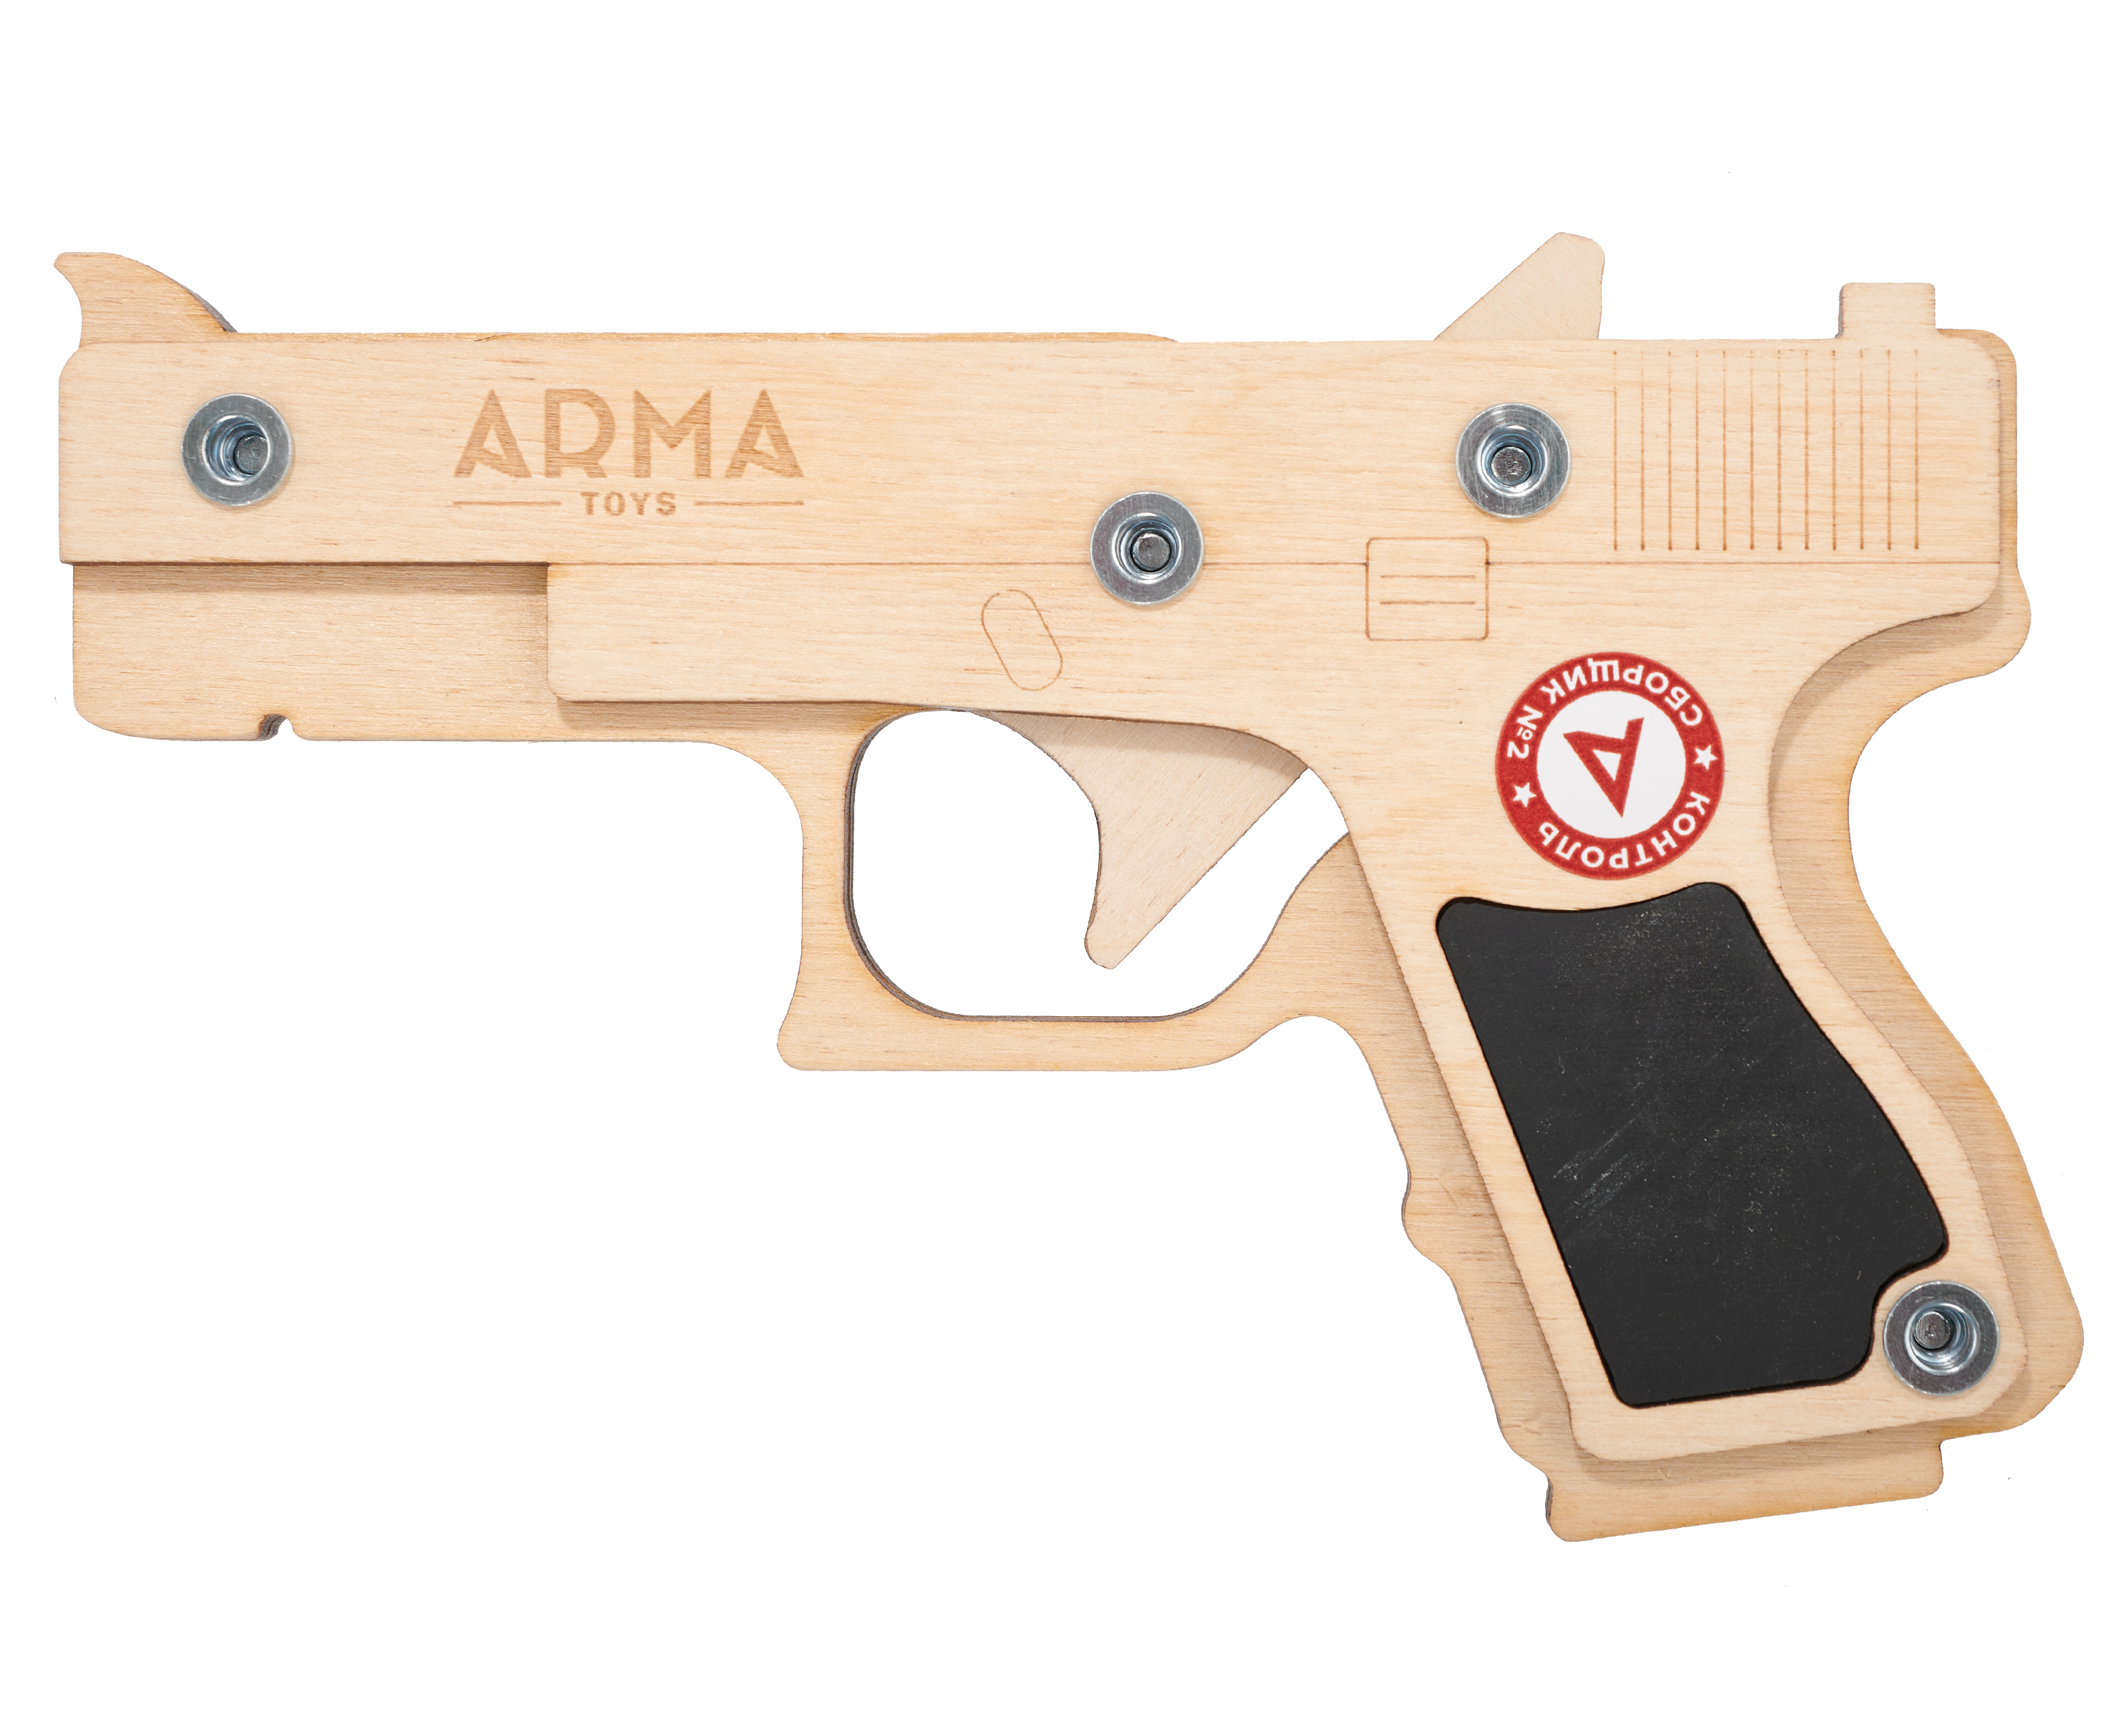 Резинкострел игрушечный Arma toys пистолет Glock макет, Compact, ATL001 резинкострел arma toys пистолет стечкина макет апс at009k окрашенный